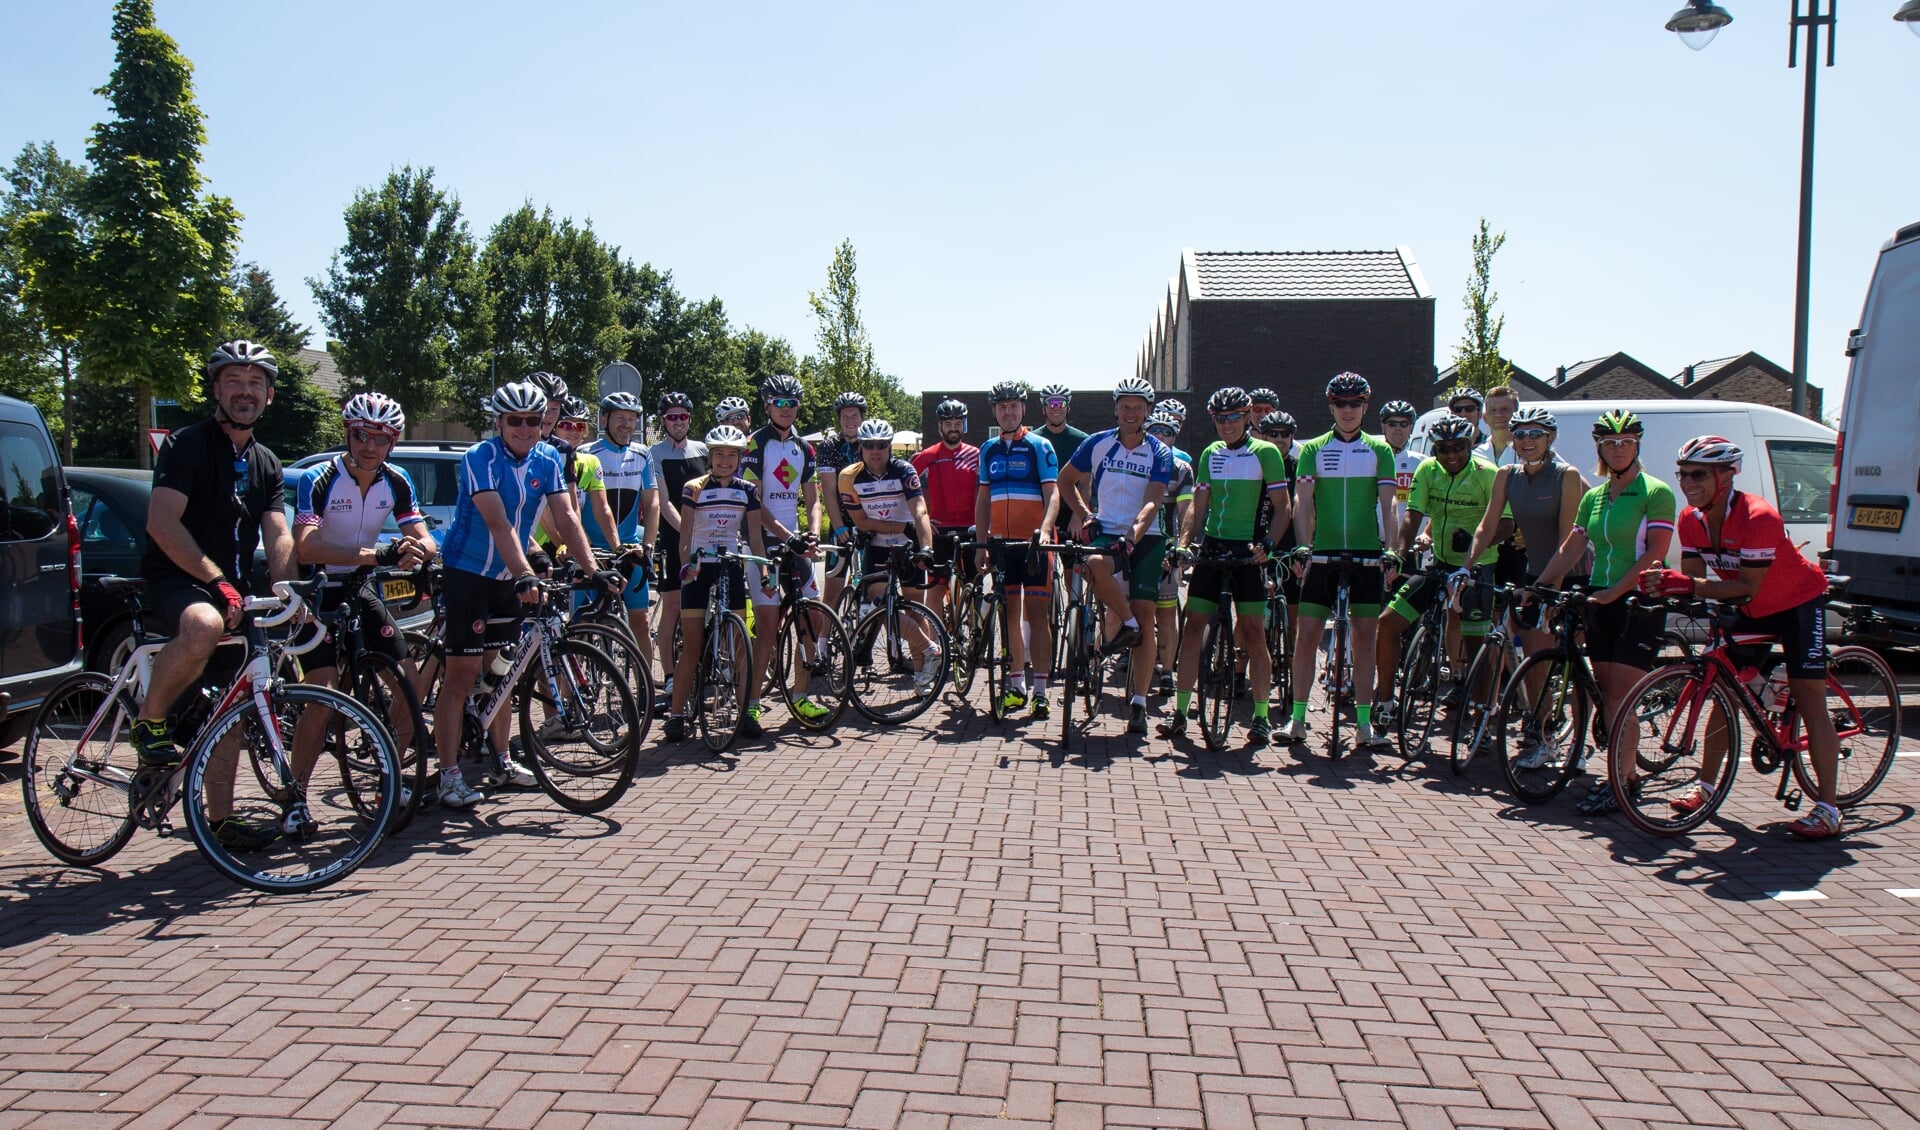 De opkomst van de 1e editie van Sleeuwijk fietst!